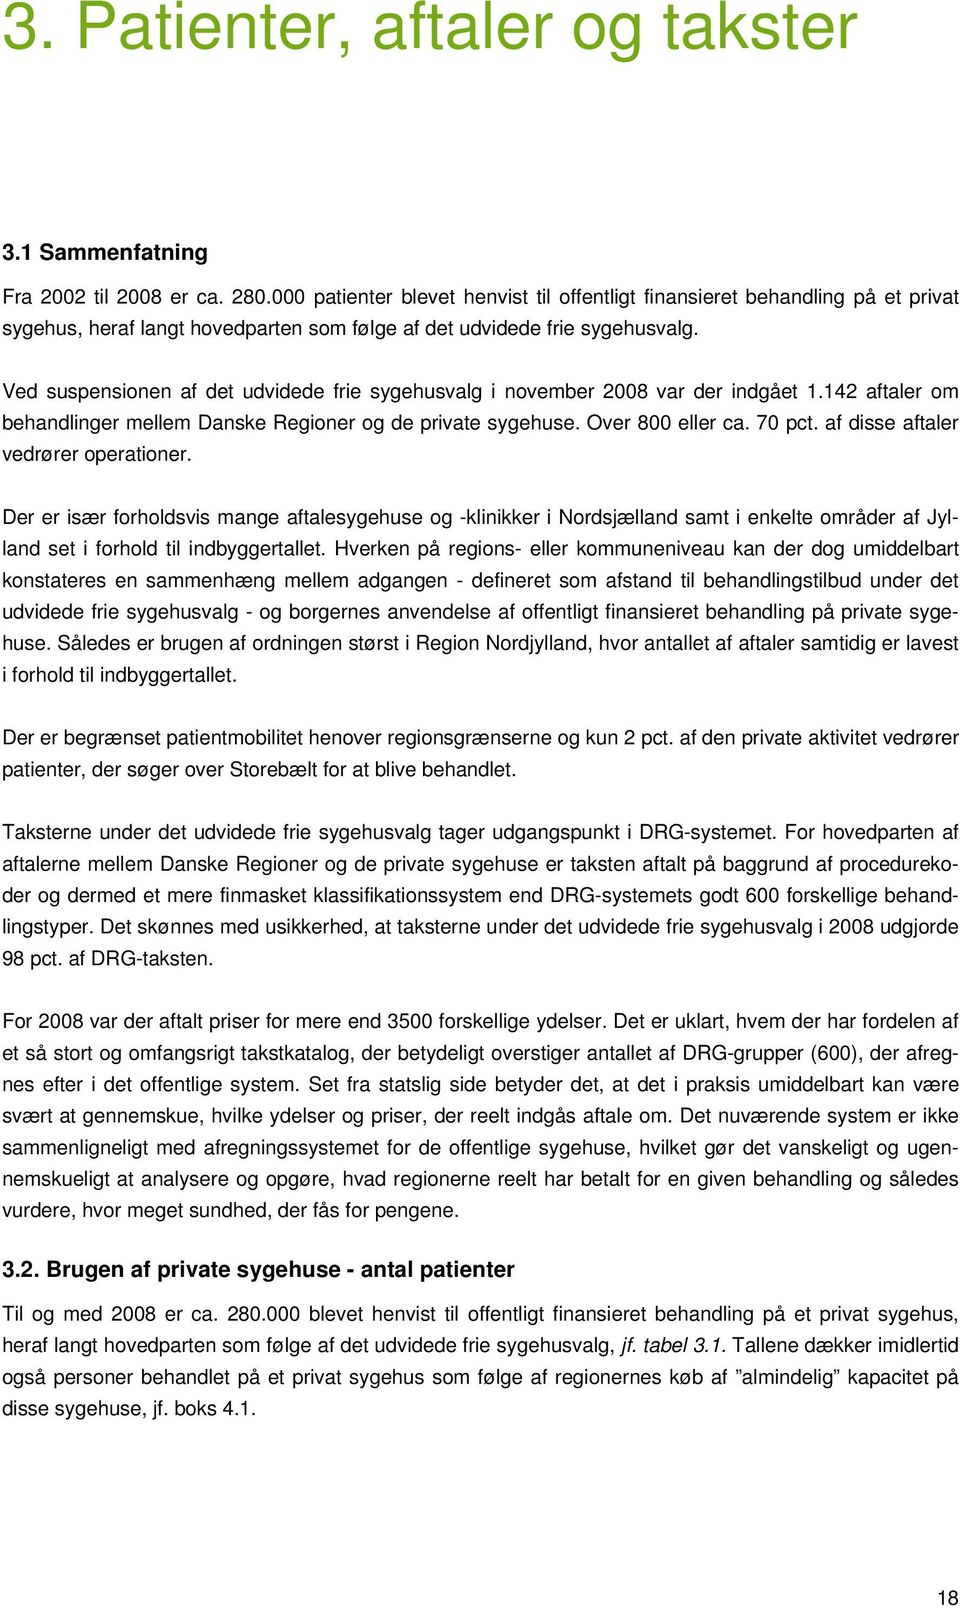 Ved suspensionen af det udvidede frie sygehusvalg i november 2008 var der indgået 1.142 aftaler om behandlinger mellem Danske Regioner og de private sygehuse. Over 800 eller ca. 70 pct.